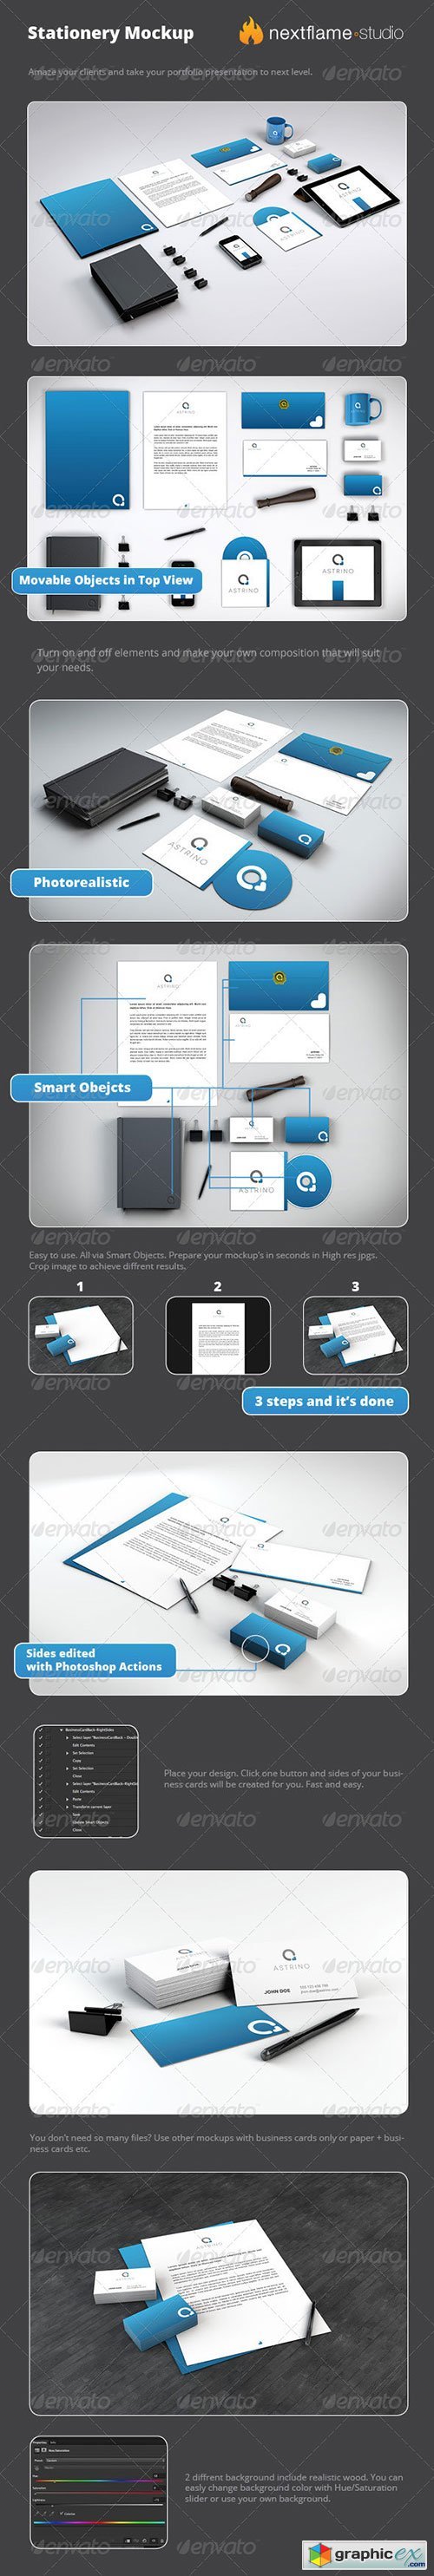 Stationery Mockup Pack - Smart Obejcts